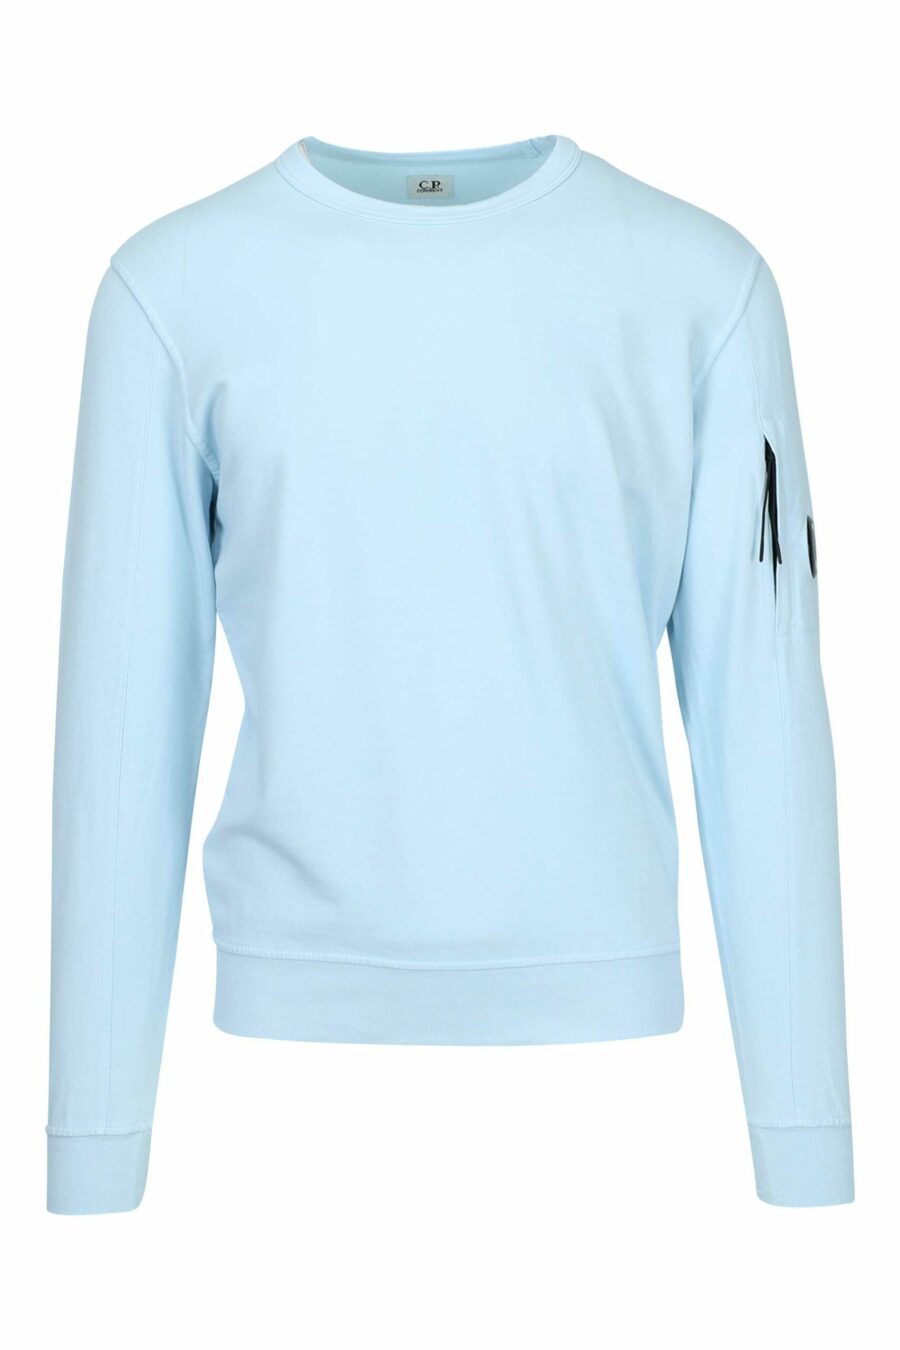 Hellblaues Sweatshirt mit Tasche und Mini-Logo-Linse - 7620943745269 skaliert